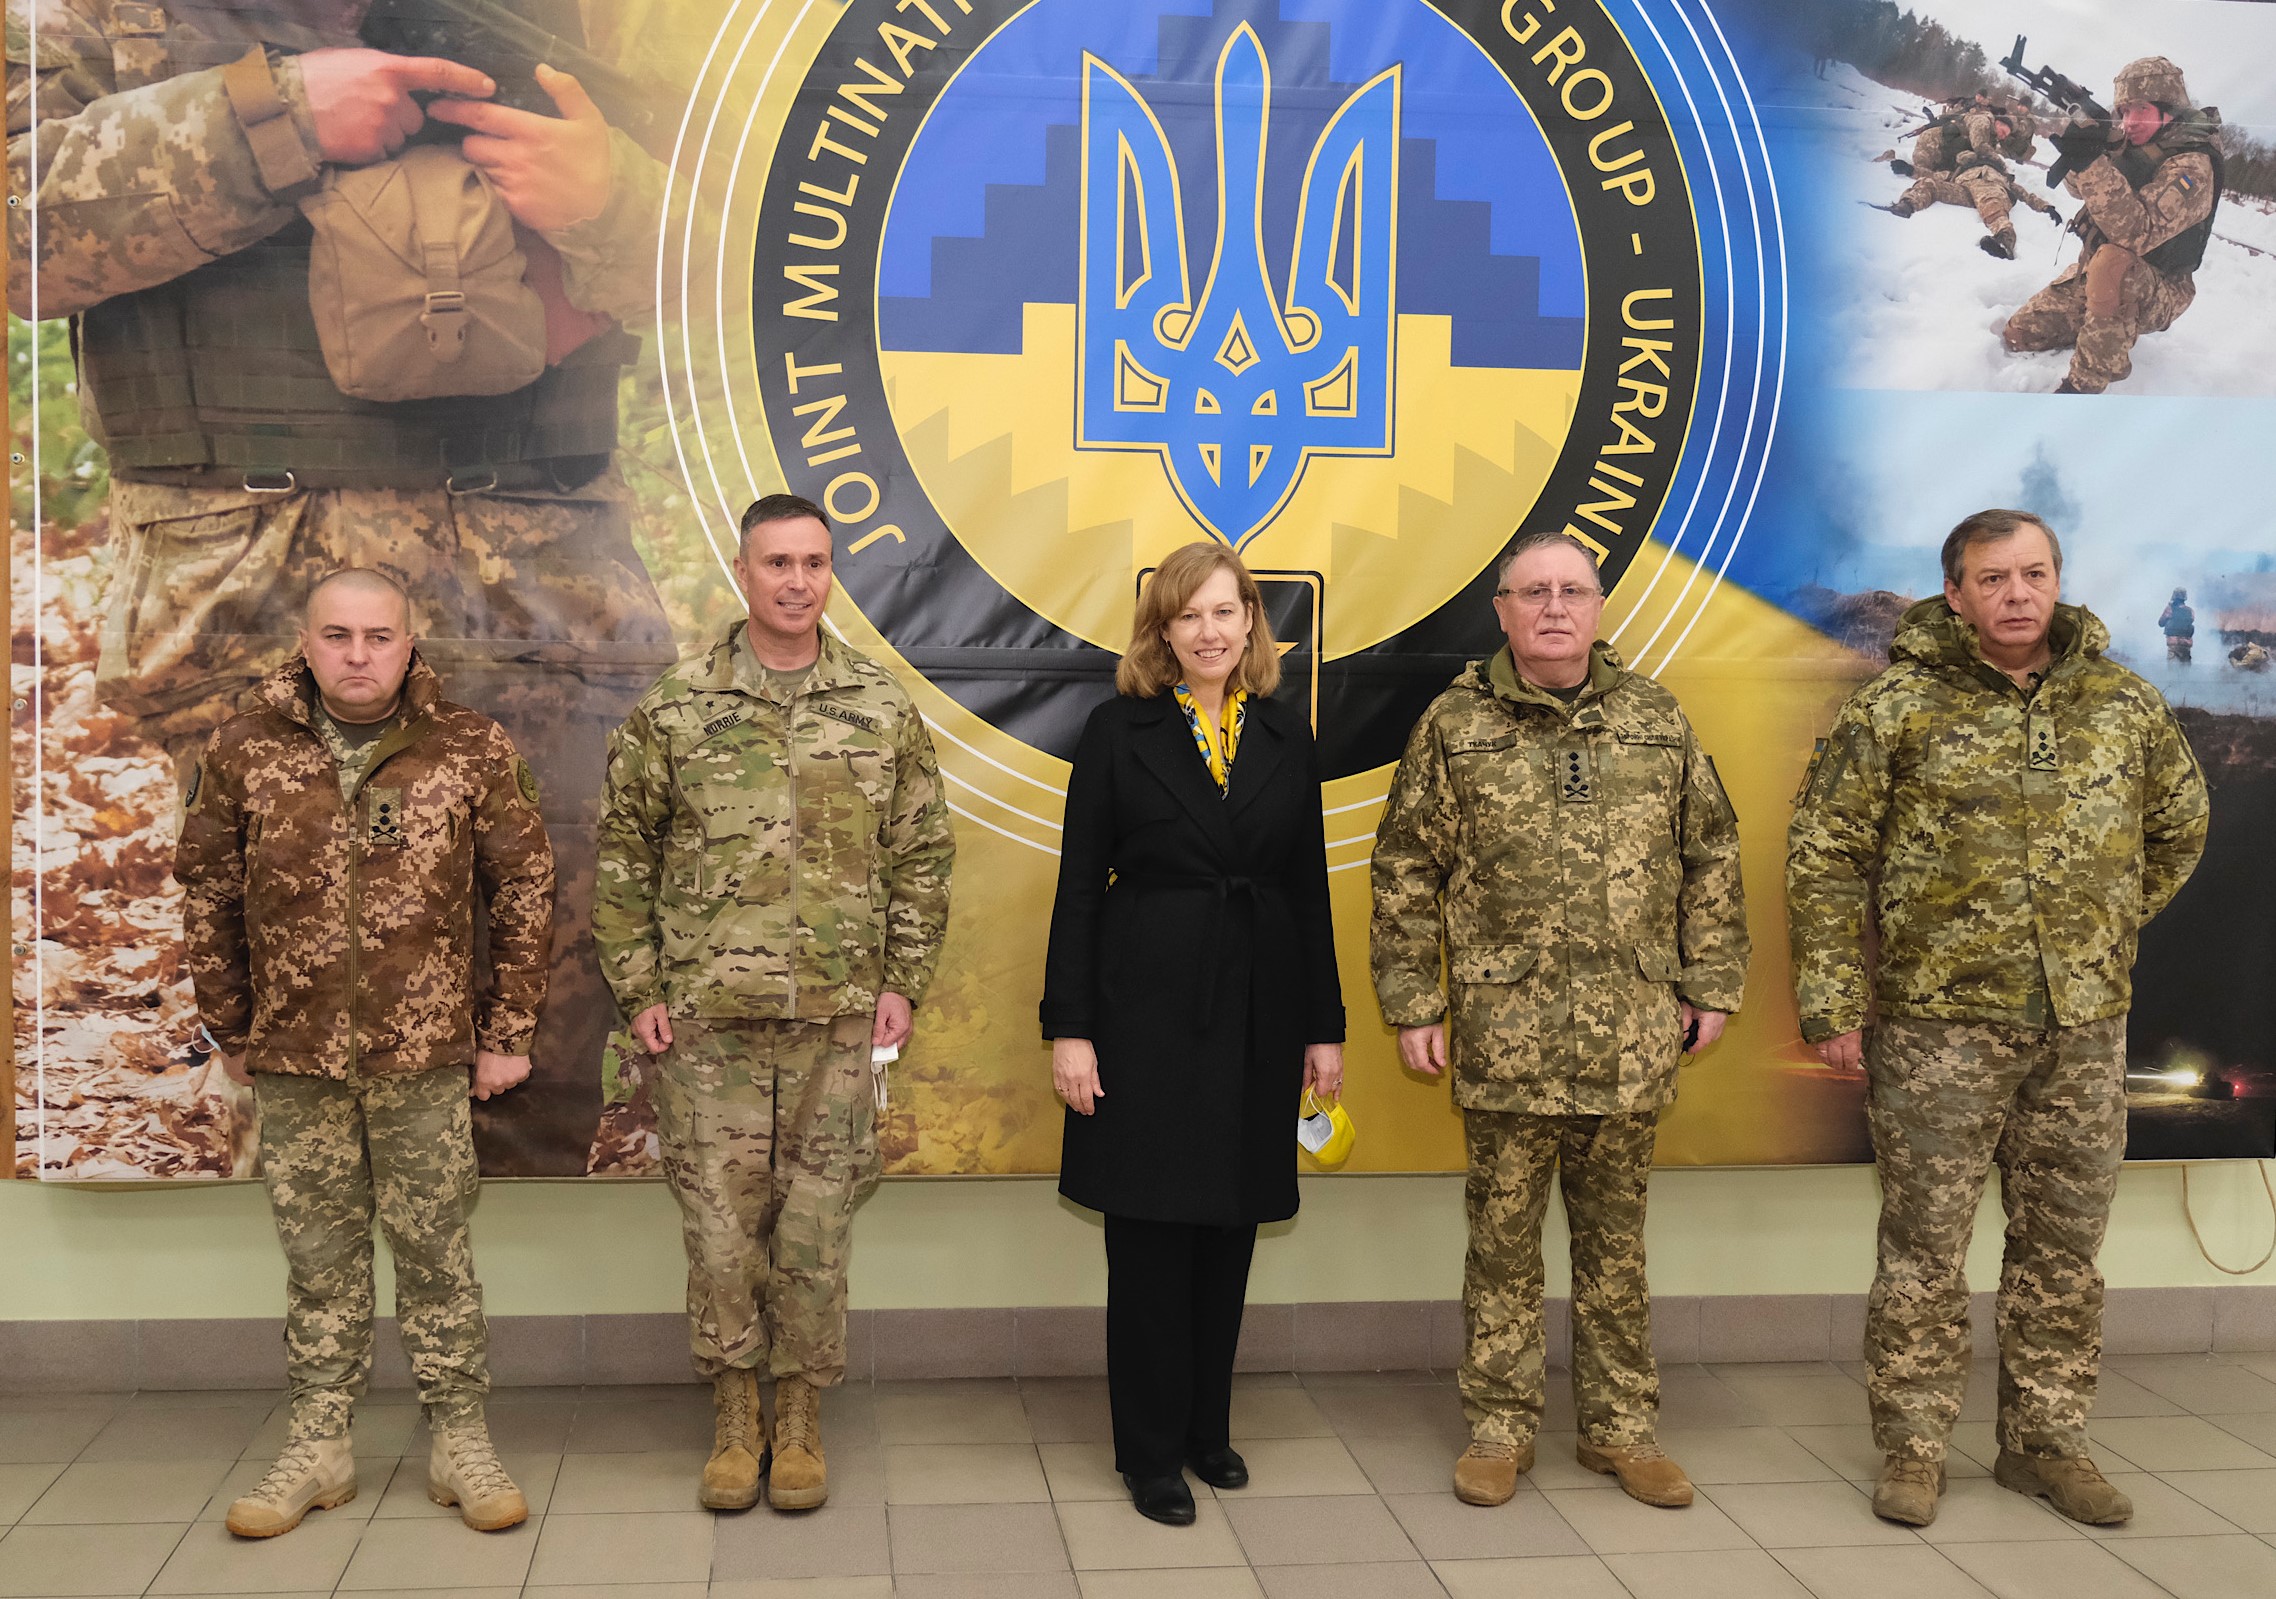 США схвалили додаткові 150 млн доларів військової допомоги Україні